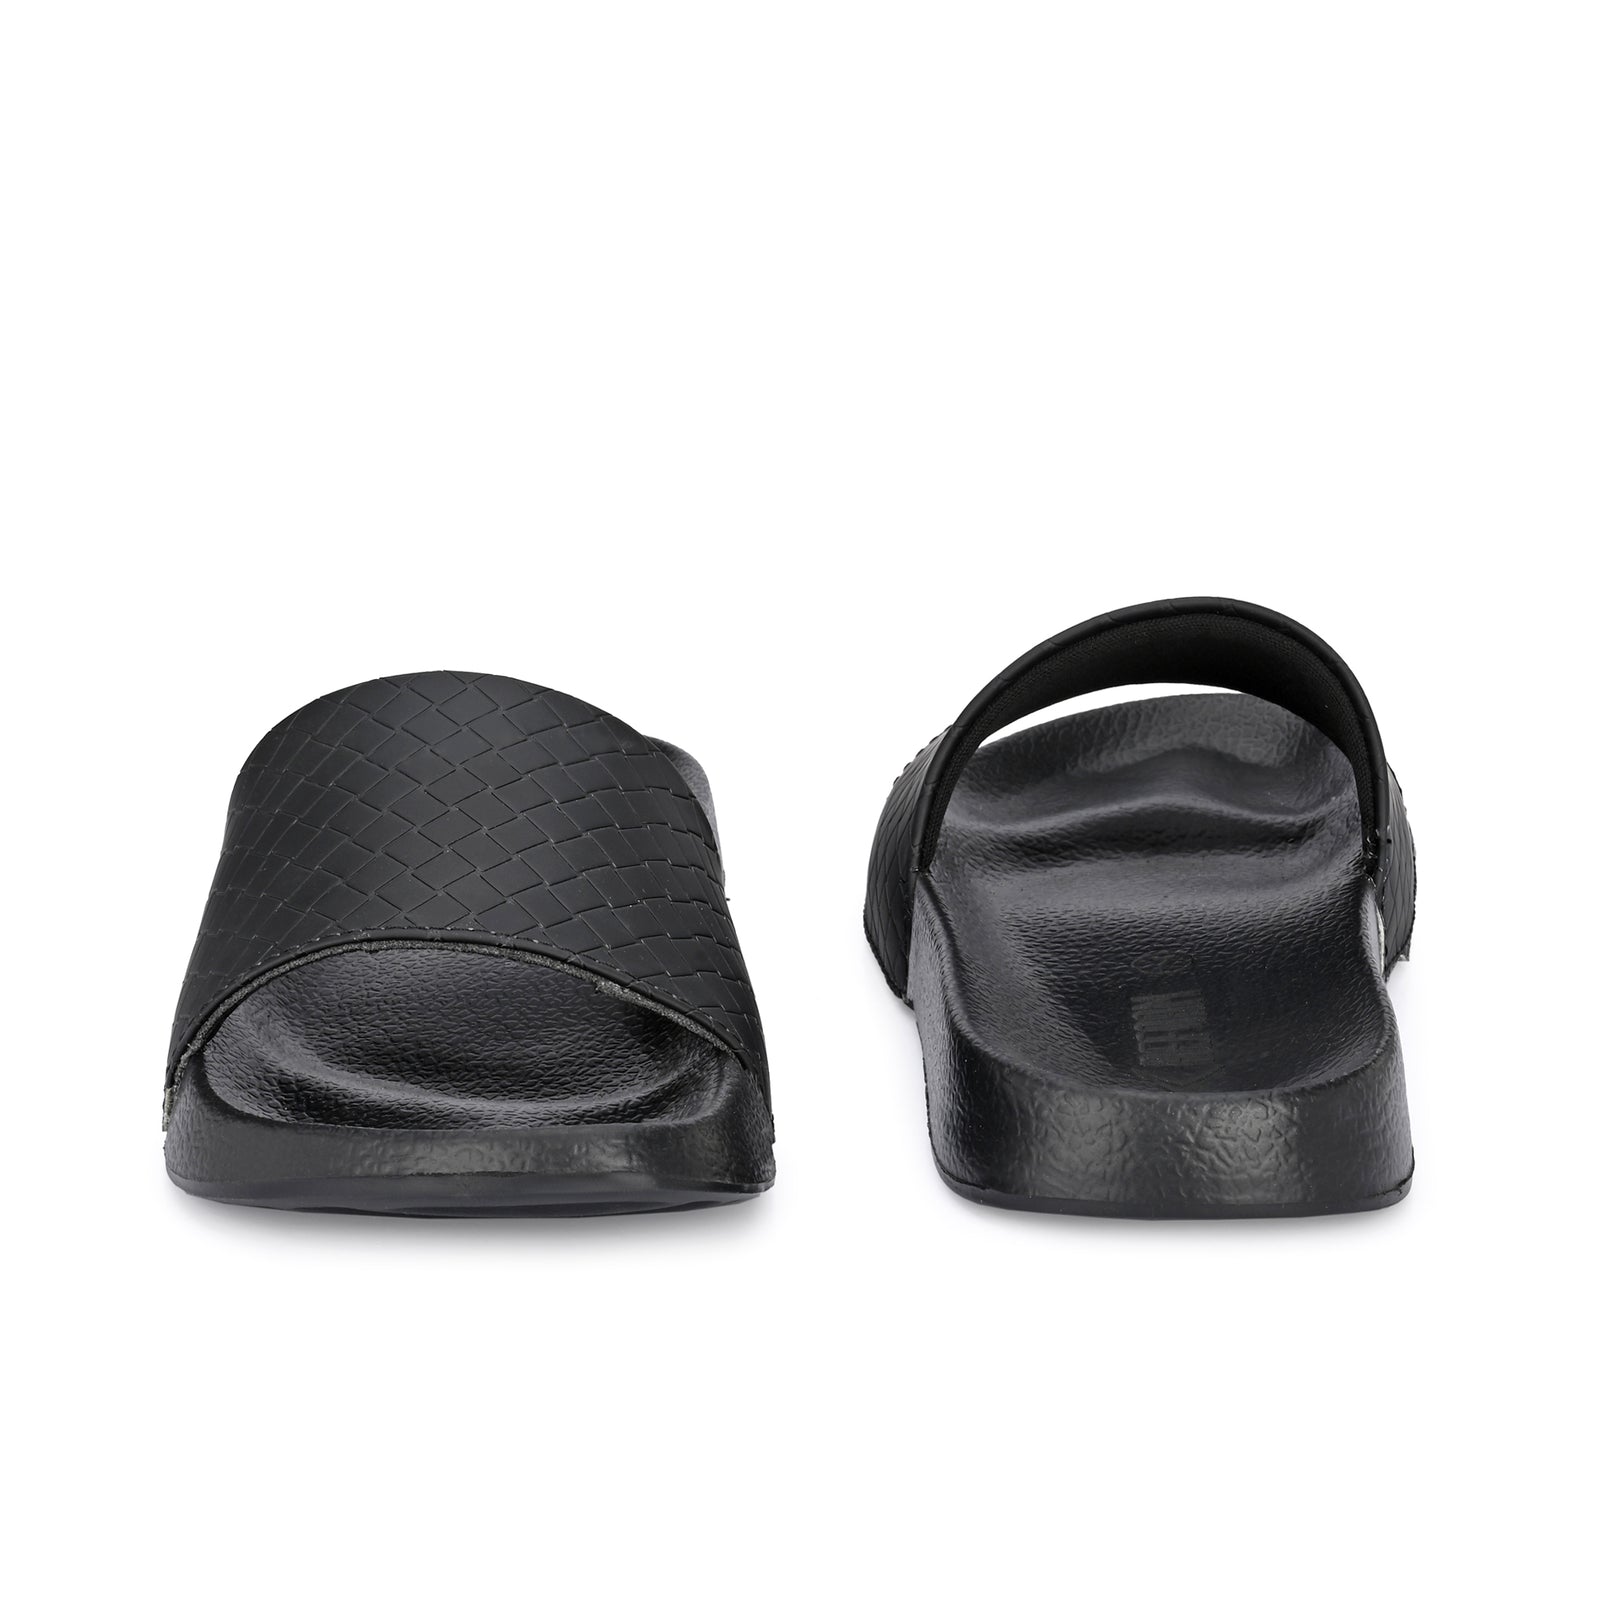 Black Solid EVA Slip On Casual Slippers For Men